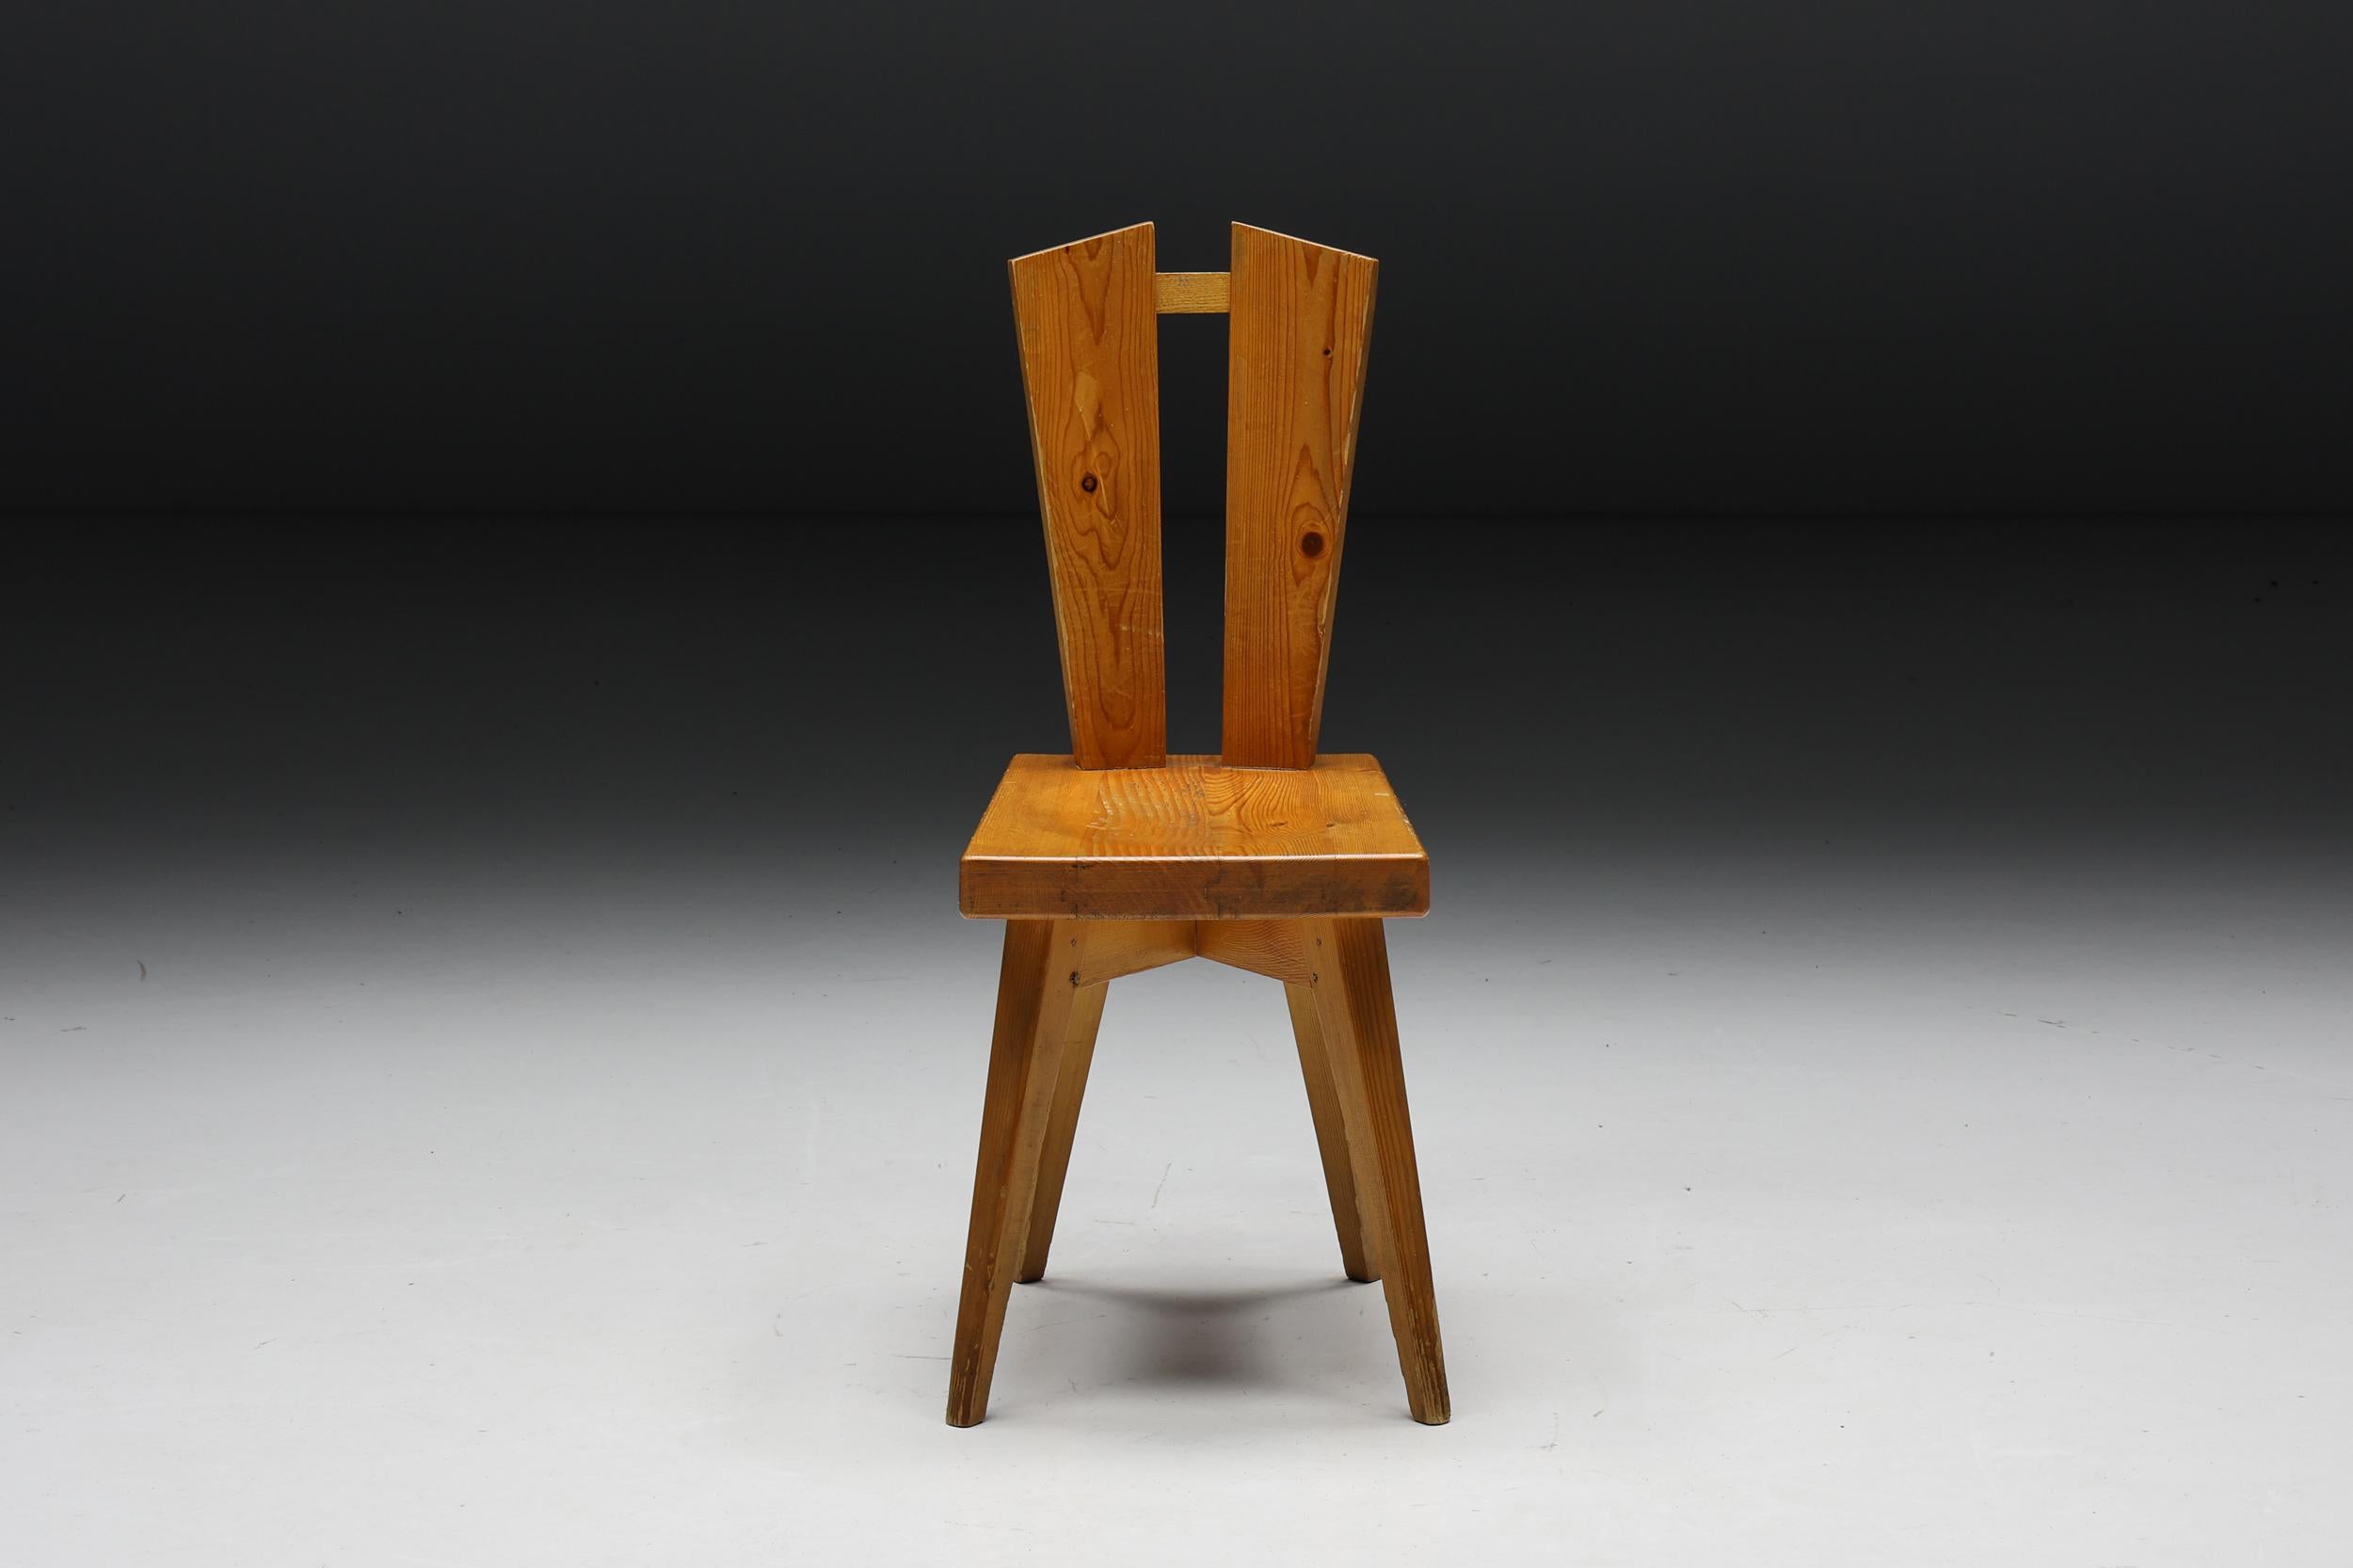 Esszimmerstuhl aus Kiefernholz, ein zeitloses Meisterwerk, das aus der Collaboration zwischen Christian Durupt und Charlotte Perriand im Jahr 1969 hervorgegangen ist. Dieser markante Stuhl aus exquisitem Kiefernholz wurde ursprünglich für den